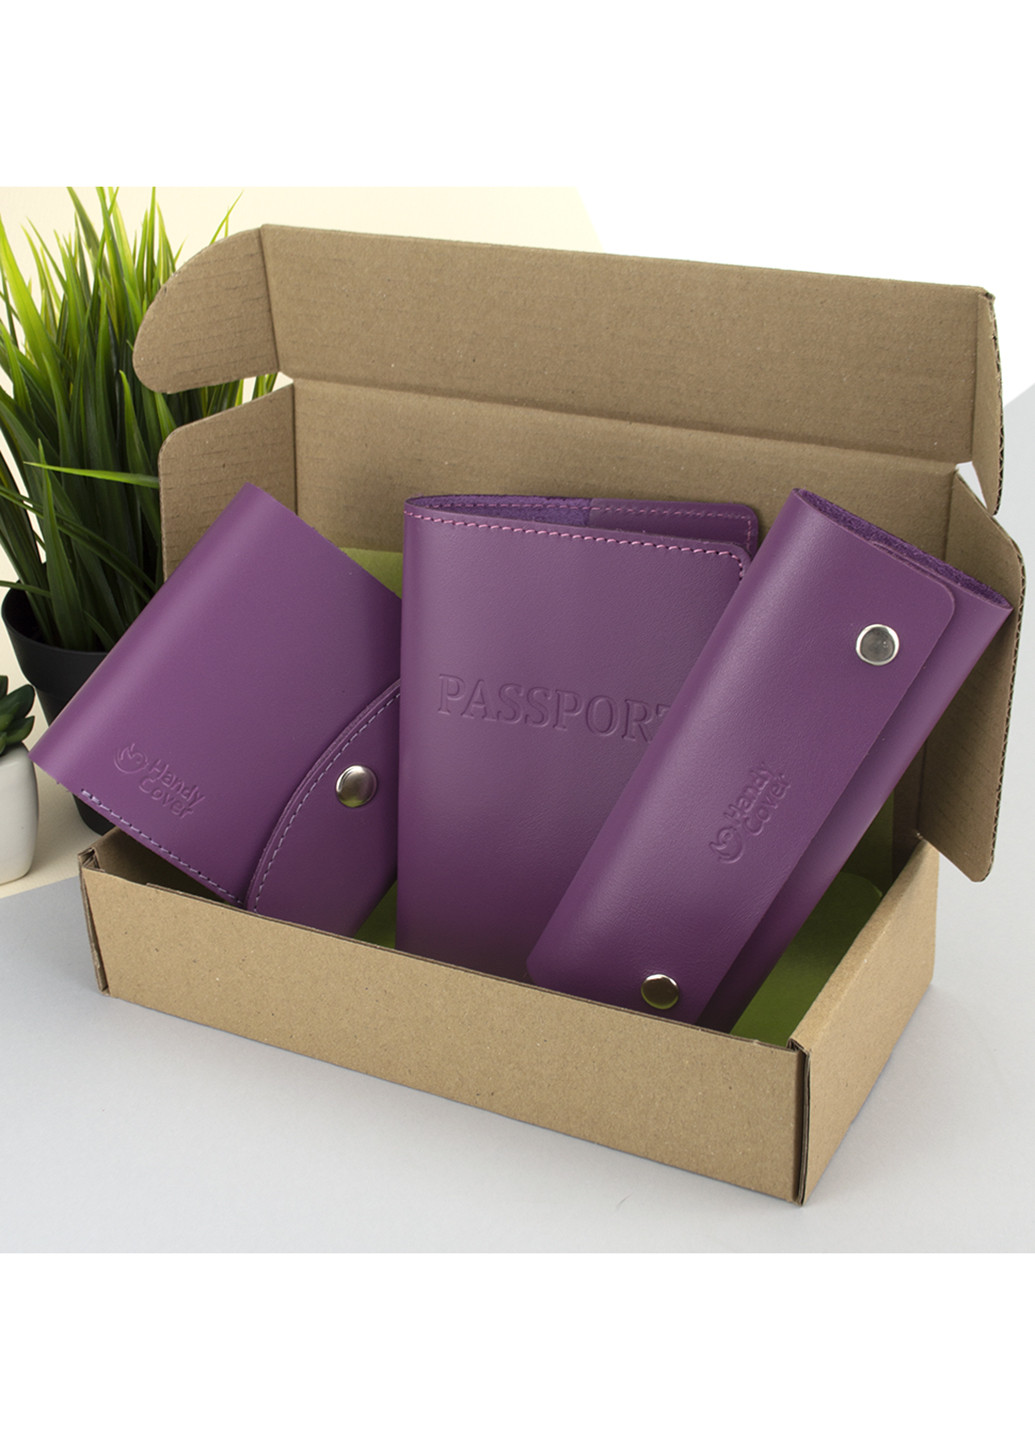 Подарочный набор женский №54 (фиолетовый) кошелек + ключница + обложка на паспорт HandyCover (229209309)